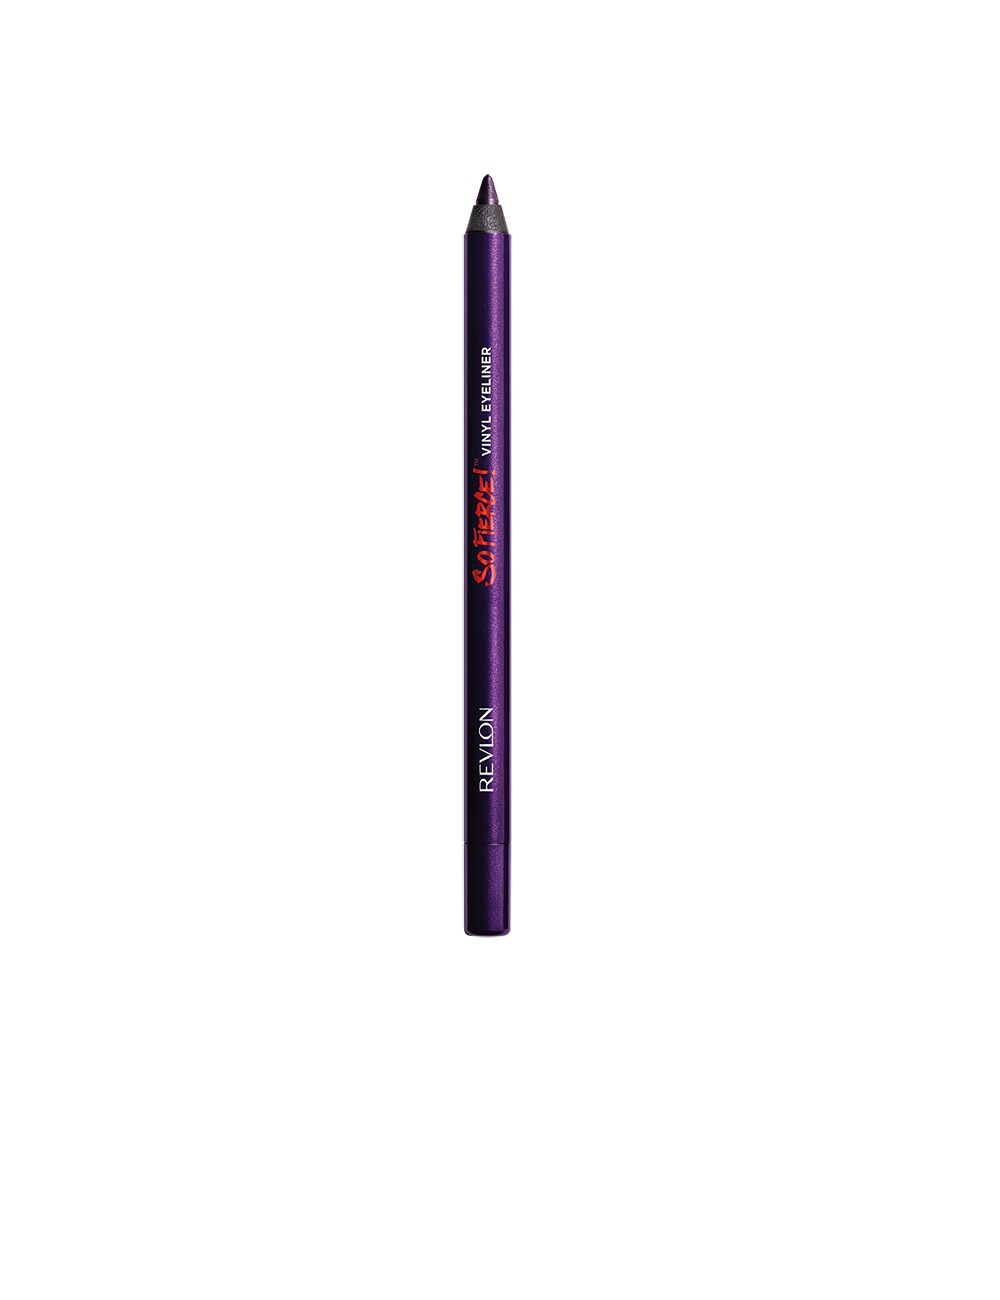 SO FIERCE vinyl eye liner powerful plum-blackened violet